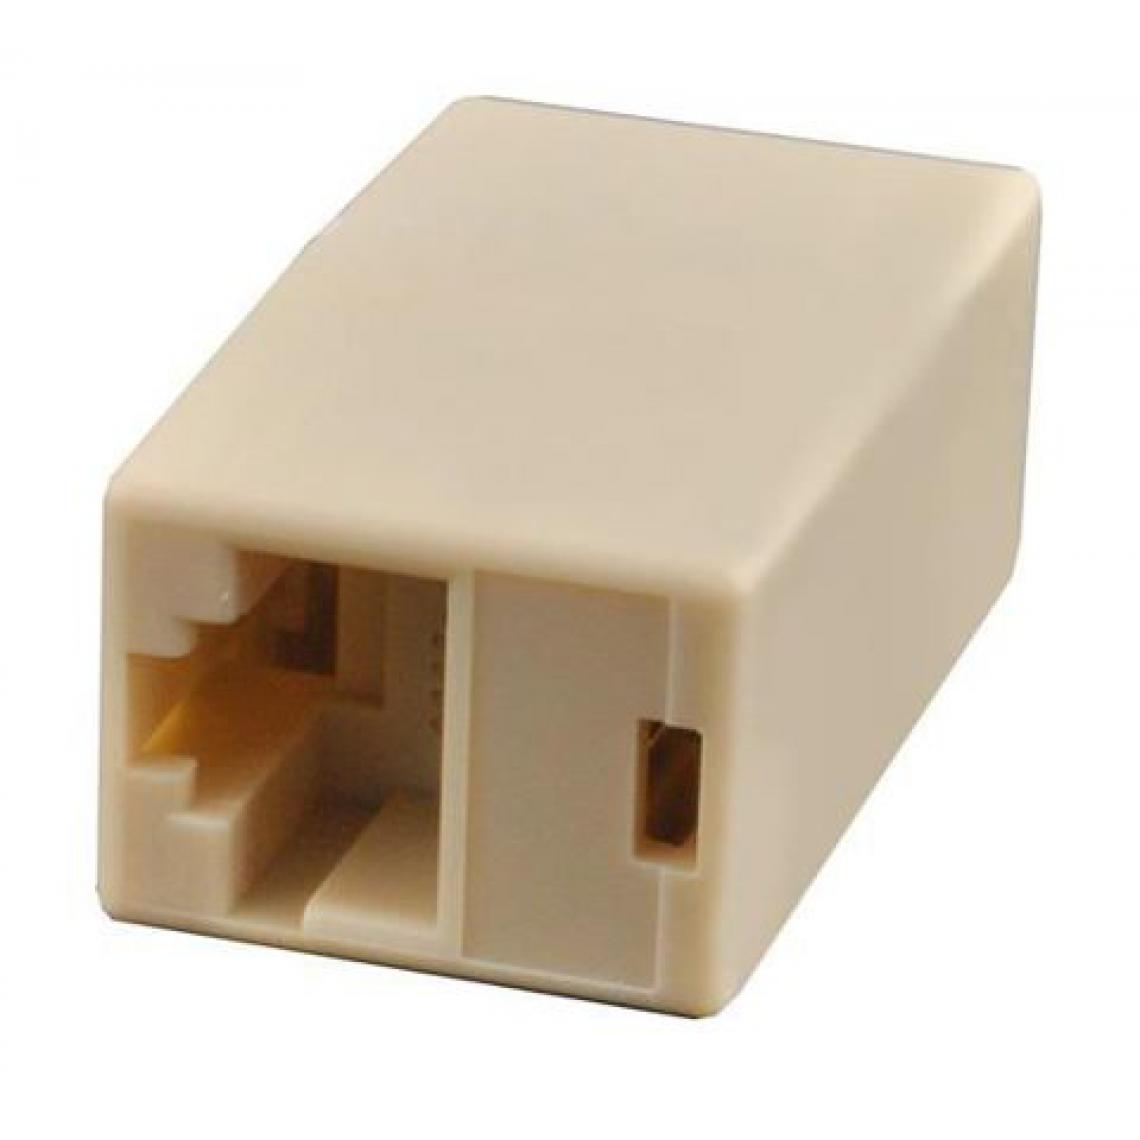 Ansco - Adaptateur RJ11 RJ11 (6P4C) Femelle - RJ11 (6P4C) Femelle Blanc ou Beige - Switch